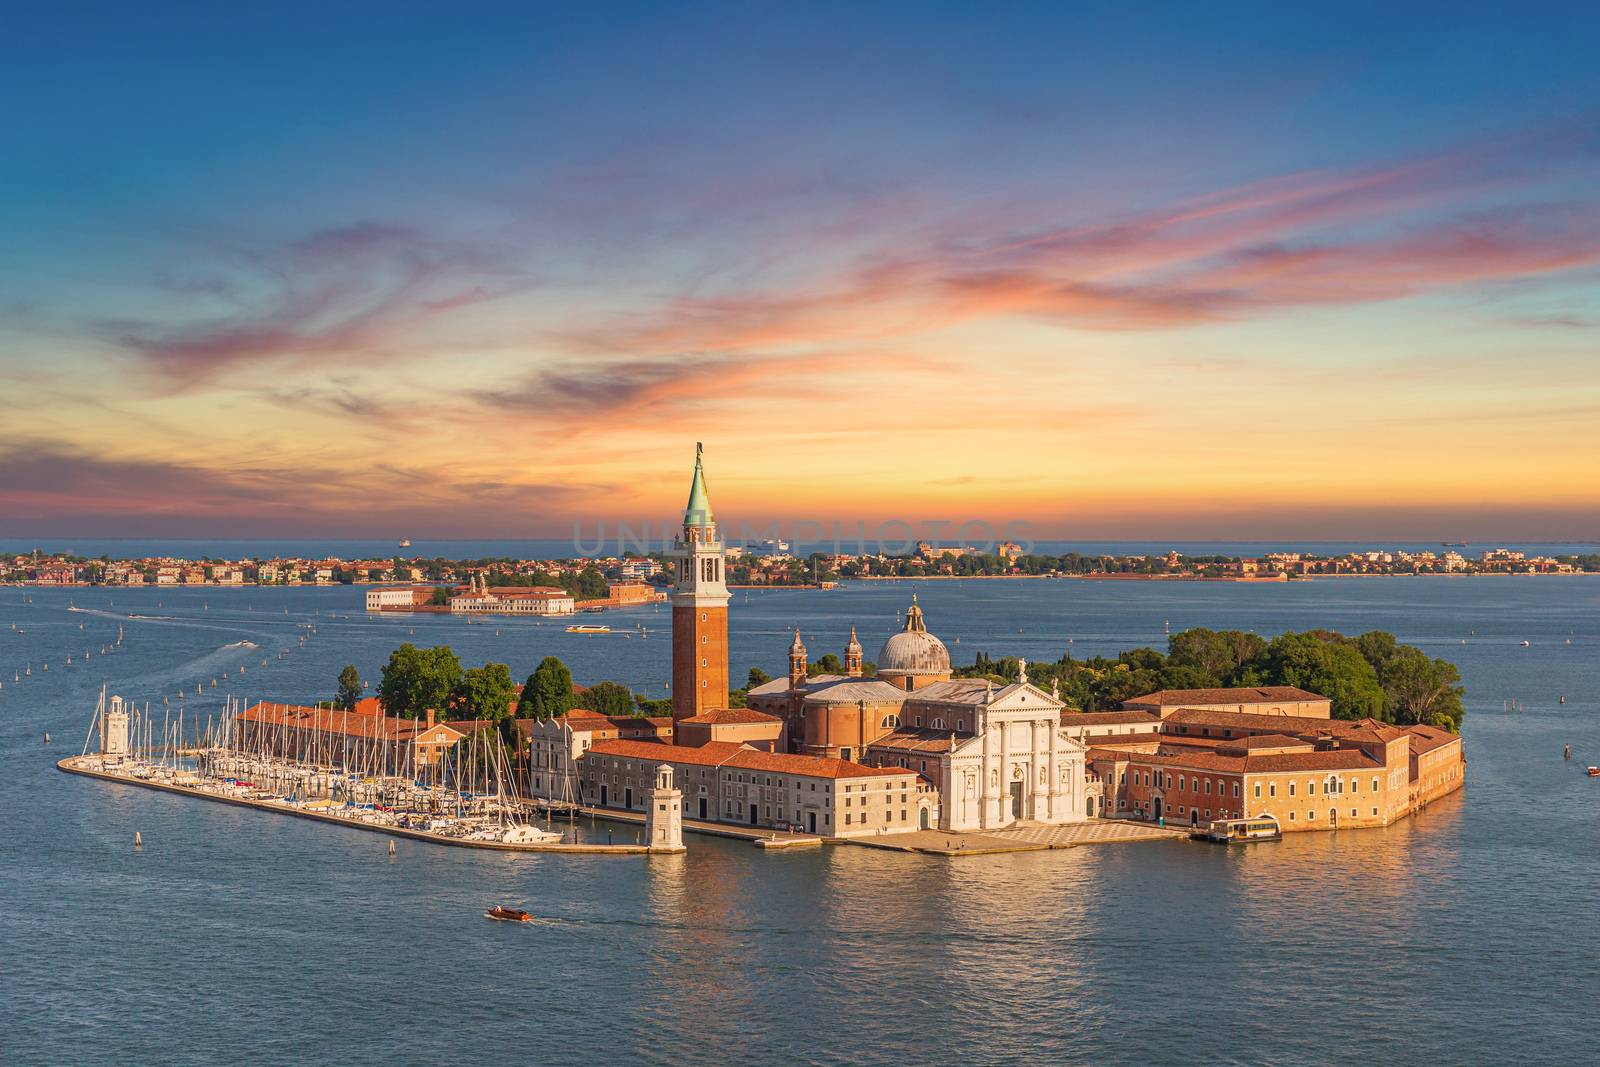 San Giorgio Maggiore islet in Venice by COffe